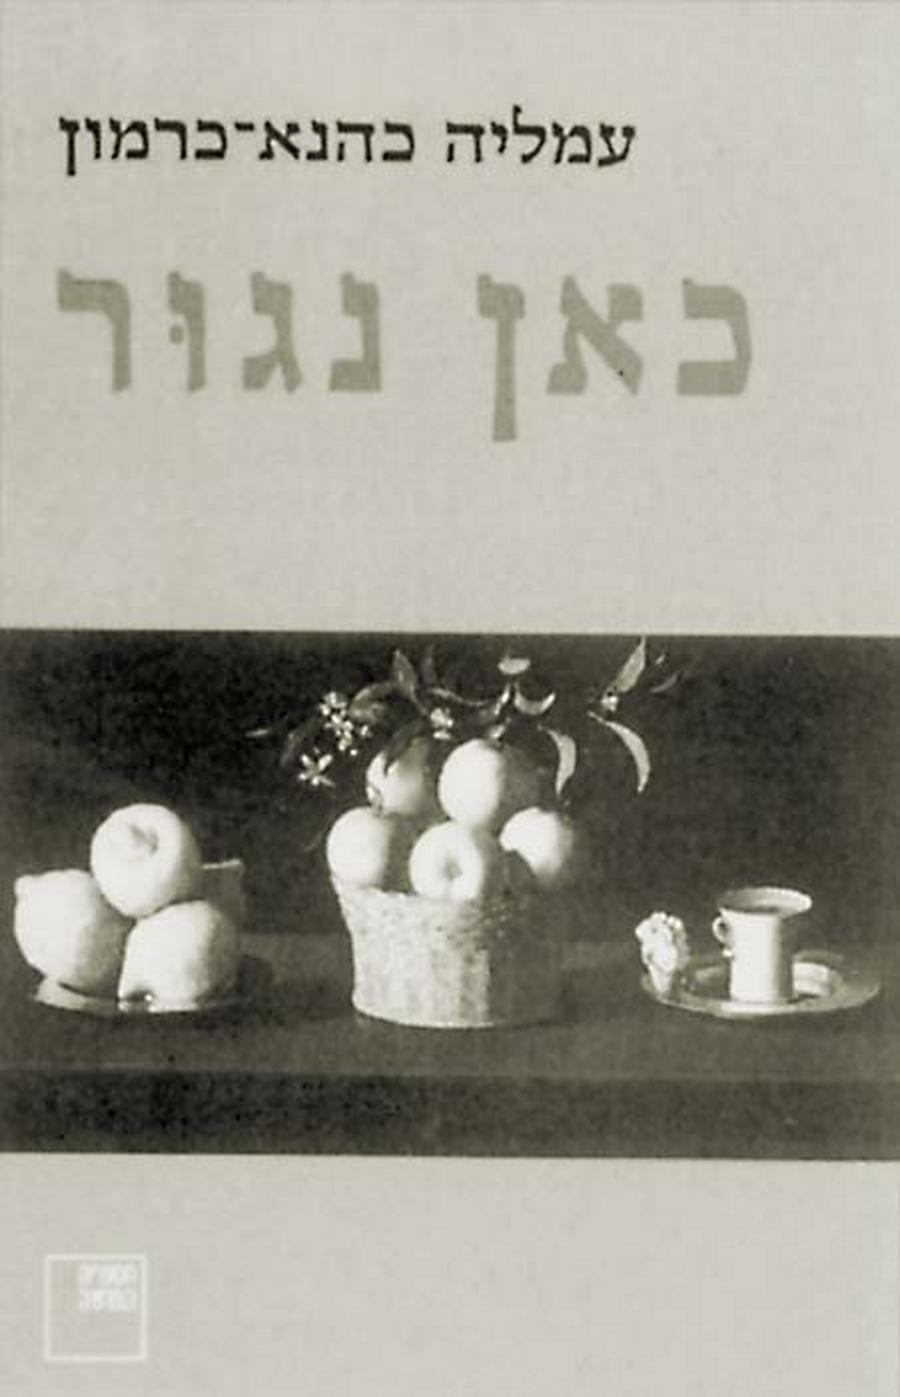 Обложка книги Амалии КаХаны-Кармон «Здесь мы будем жить». Тель-Авив, 1996.